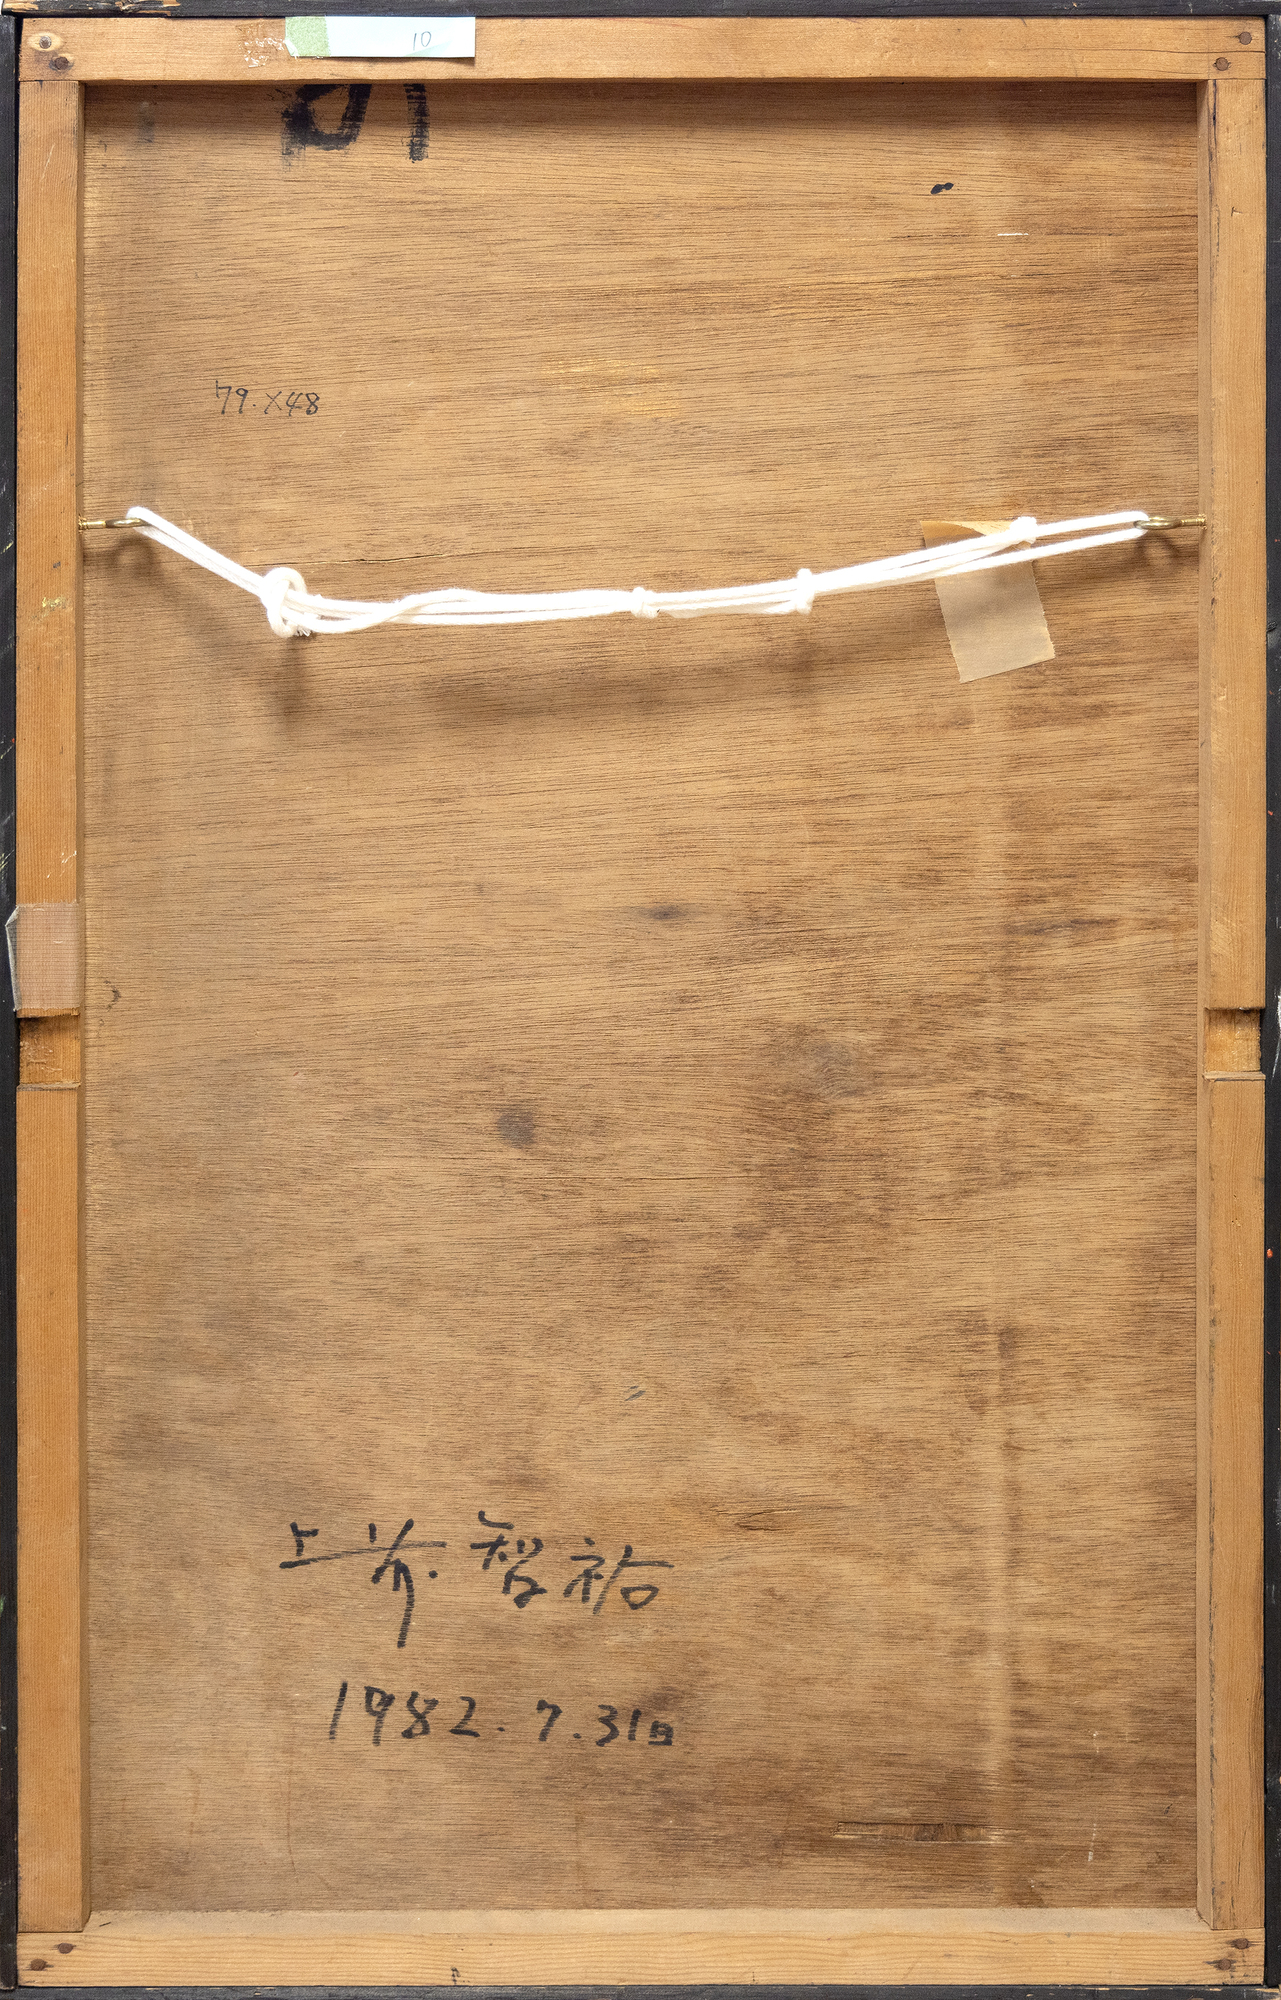 Obwohl Chiyu Uemae nicht als Aktionsmaler gilt, ist er für verschiedene Ansätze bekannt, die sich auf Form, Textur und das Zusammenspiel von Farben konzentrieren. Wie in dem vorliegenden Beispiel ohne Titel trägt er die Farbe häufig mit einem Spachtel auf und erzeugt so strukturierte Schichten, die Farbpartikel wie vergrabene Juwelen direkt unter der Erde zum Leuchten bringen. Bevor er sich der Gutai-Gruppe anschloss, studierte Uemae Nan Ga, die südliche Schule der chinesischen Malerei, und er gibt an, dass seine intensive Erfahrung mit dem Kyoto-Stil des Färbens und seine Nähdisziplin seinen ausgereiften Stil geprägt haben. Uemaes Arbeiten erforschen die Materialität der Farbe und die Möglichkeiten der Leinwand und spiegeln eine tiefe Auseinandersetzung mit dem Akt des Malens selbst wider.